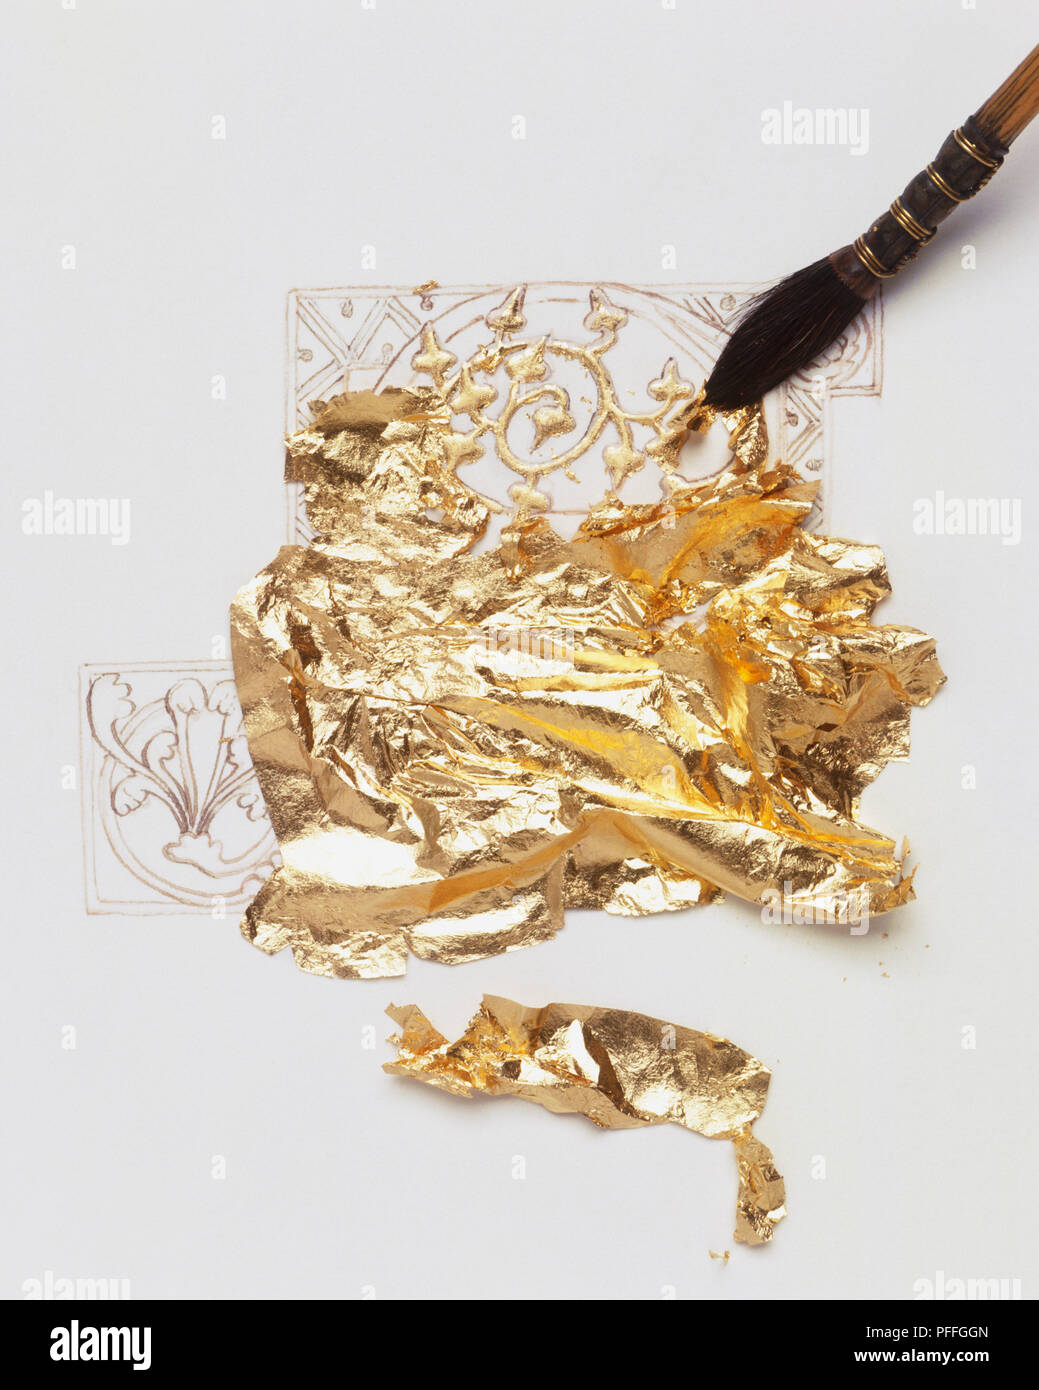 Erstellen von mittelalterlichen Beleuchtete florales Muster mit Blattgold  und Pinsel auf Bleistift Zeichnung Stockfotografie - Alamy